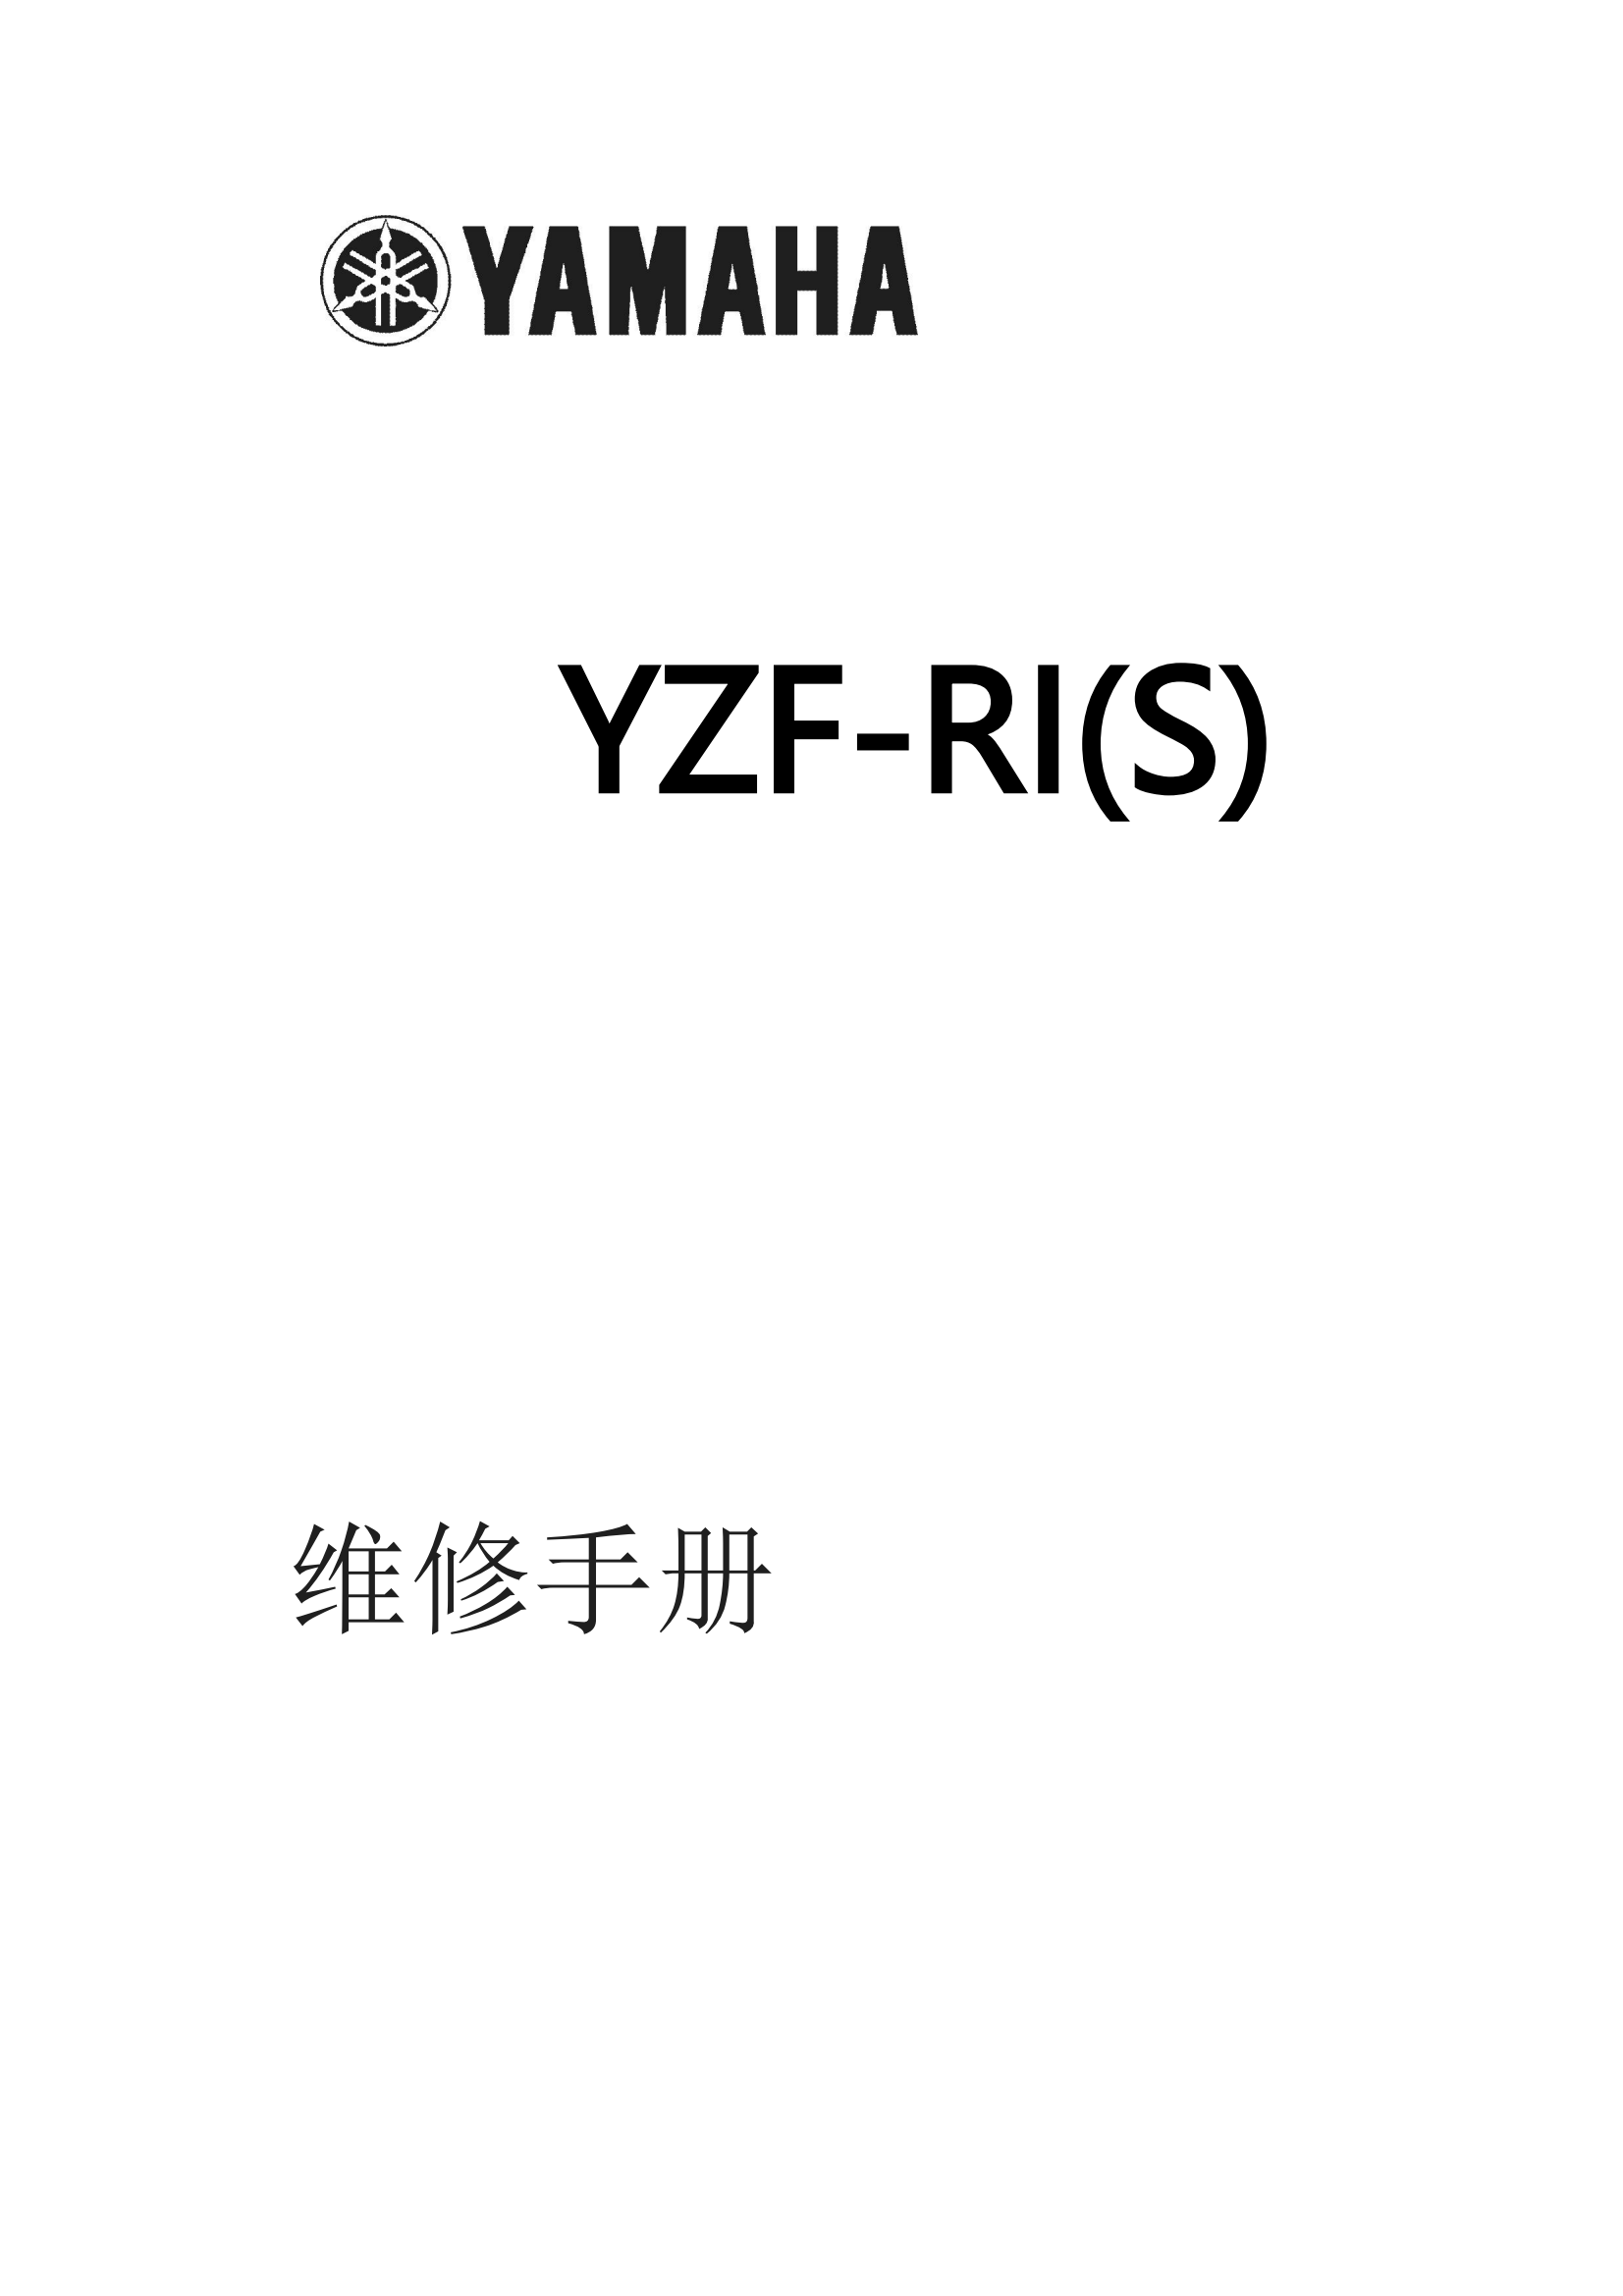 简体中文2004-2005年雅马哈yzfr1雅马哈r1维修手册插图